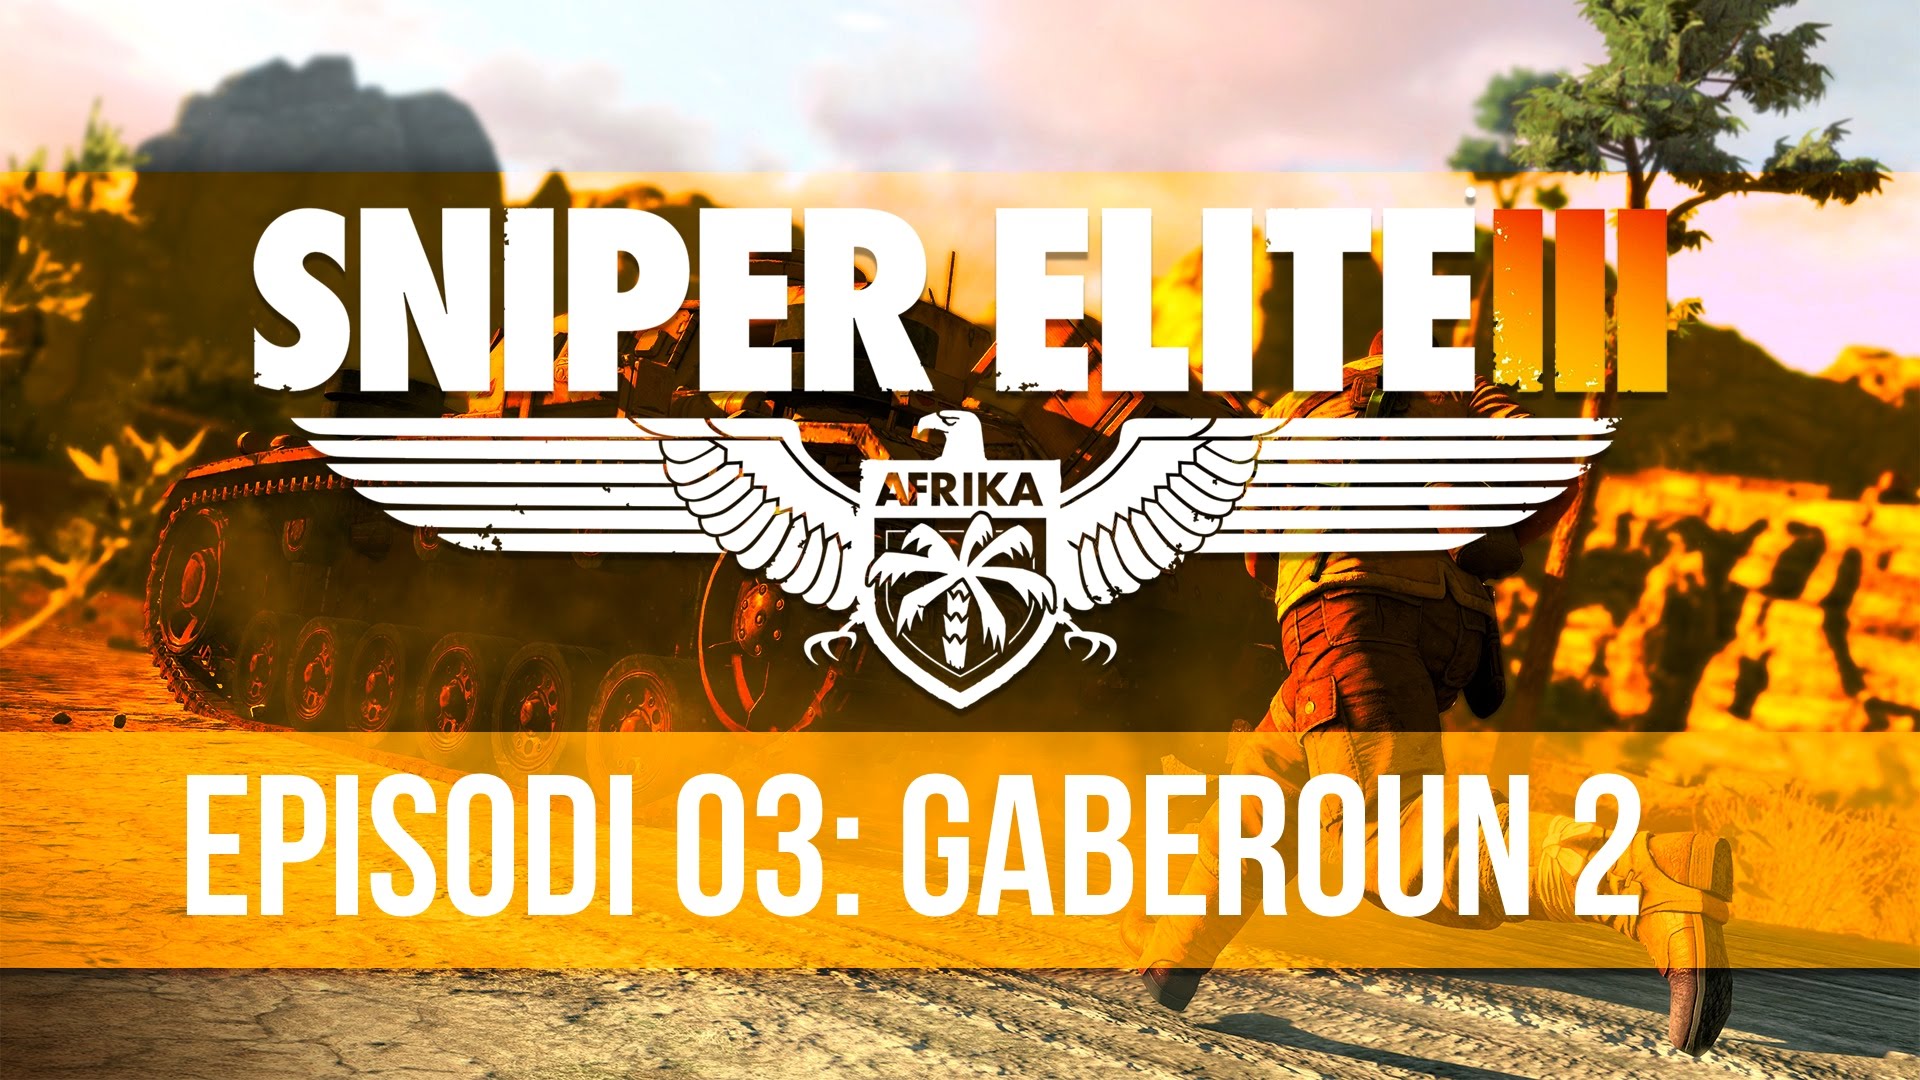 Sniper Elite III - Episodi 3: Gaberoun 2 de Fredolic2013